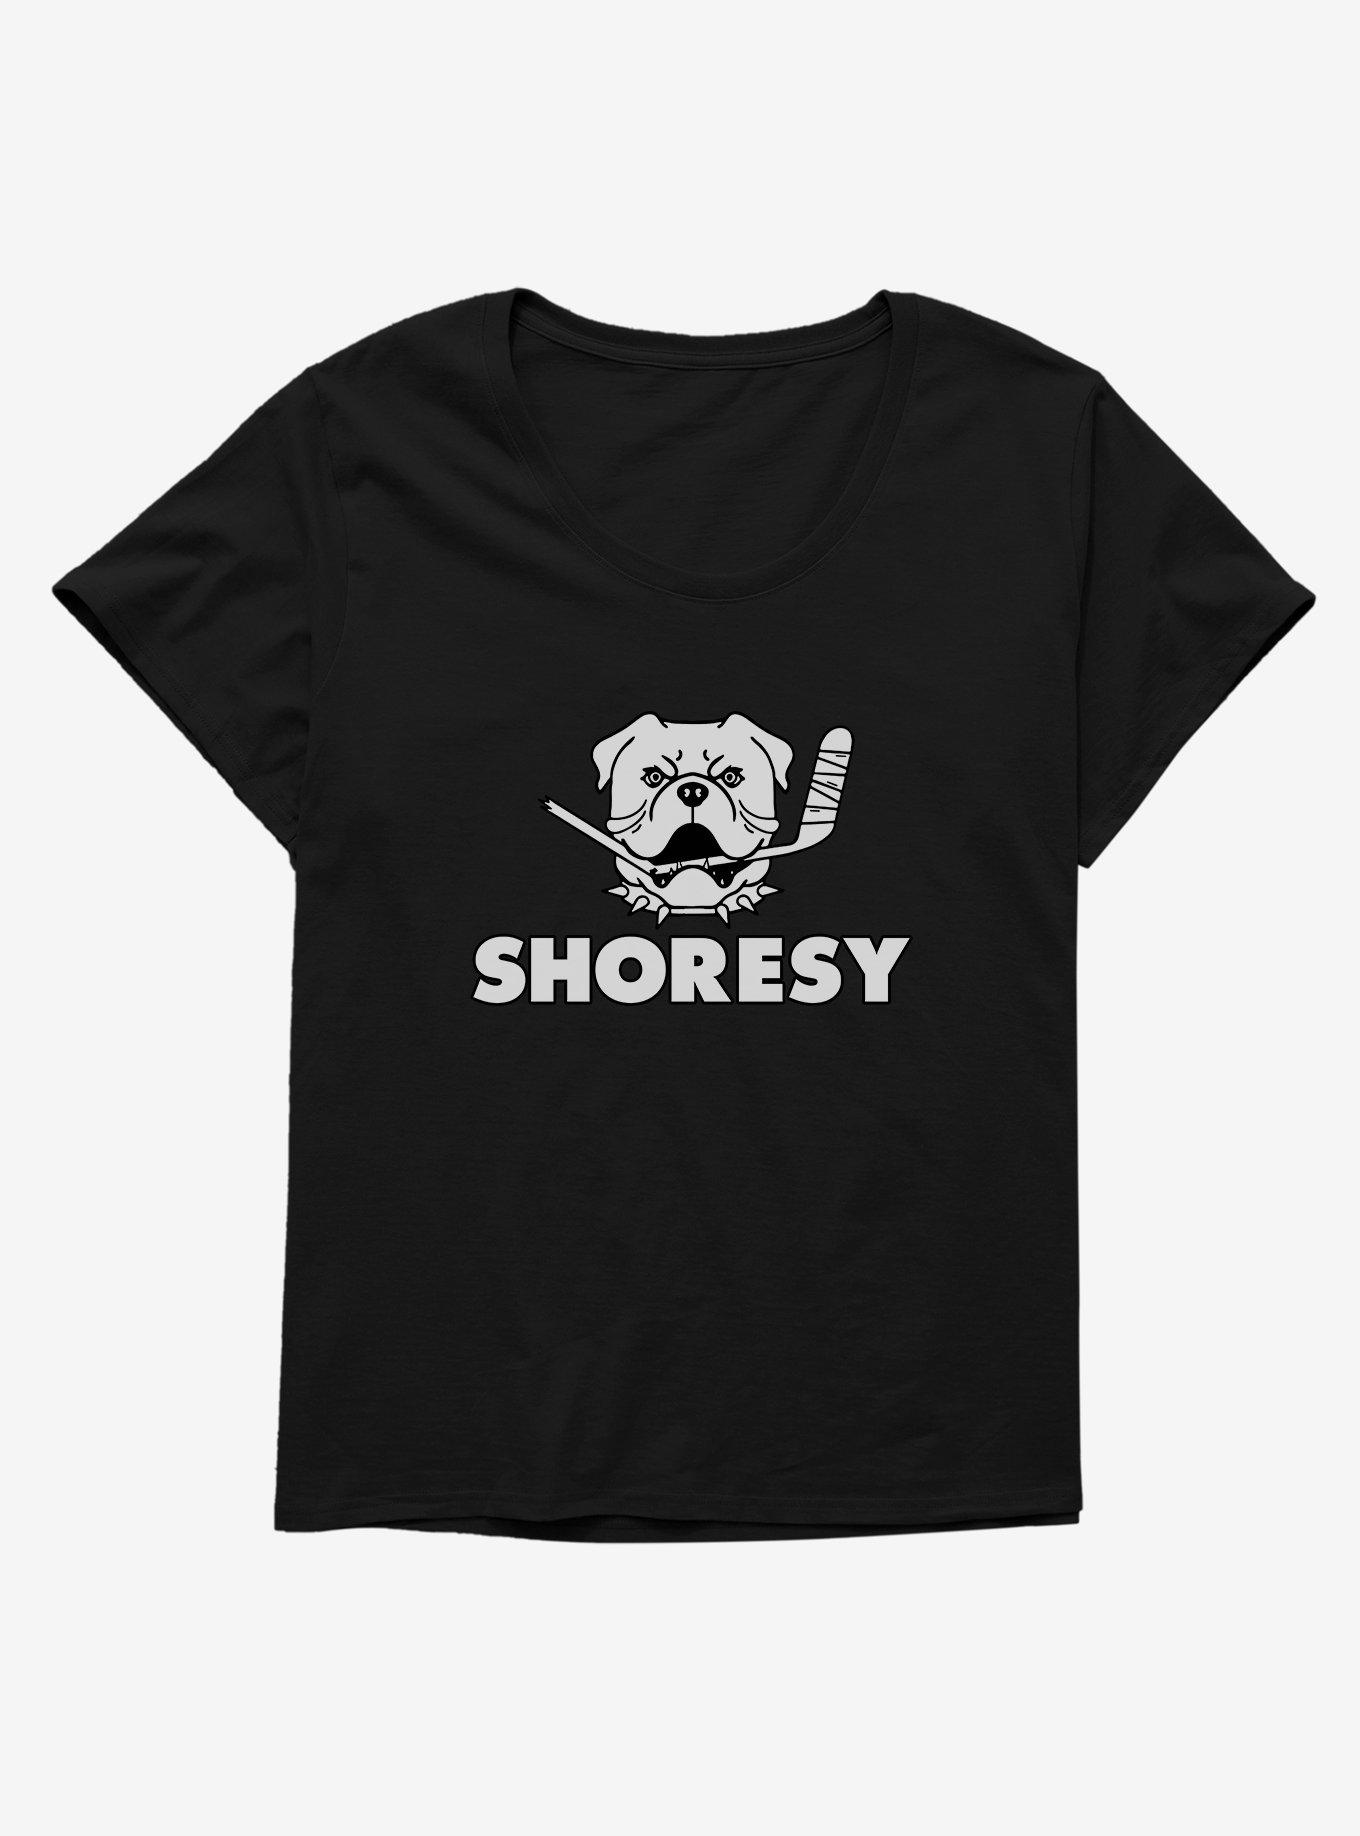 Shoresy Bulldog Logo Girls T-Shirt Plus Size, BLACK, hi-res